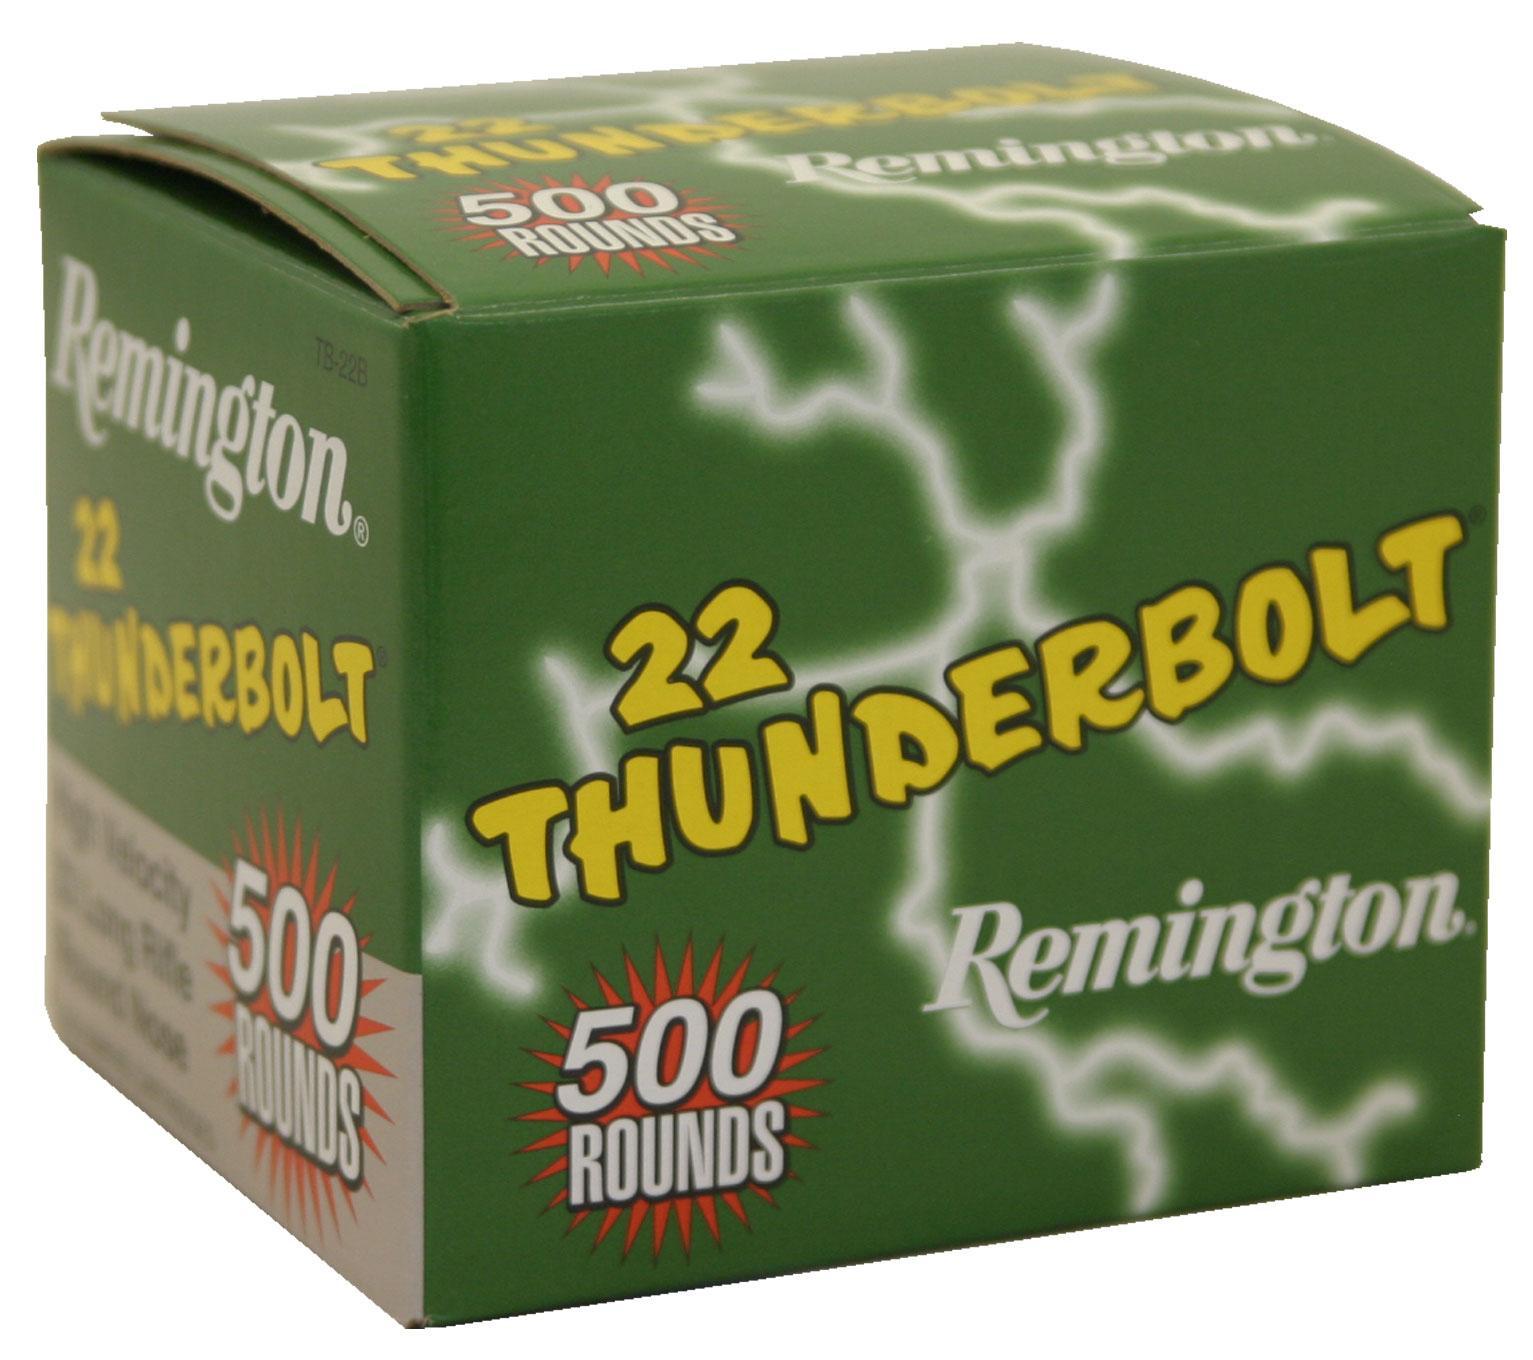 Remington .22 Thunderbolt Rimfire Ammunition .22 LR 40 gr RN 1255 fps-img-0